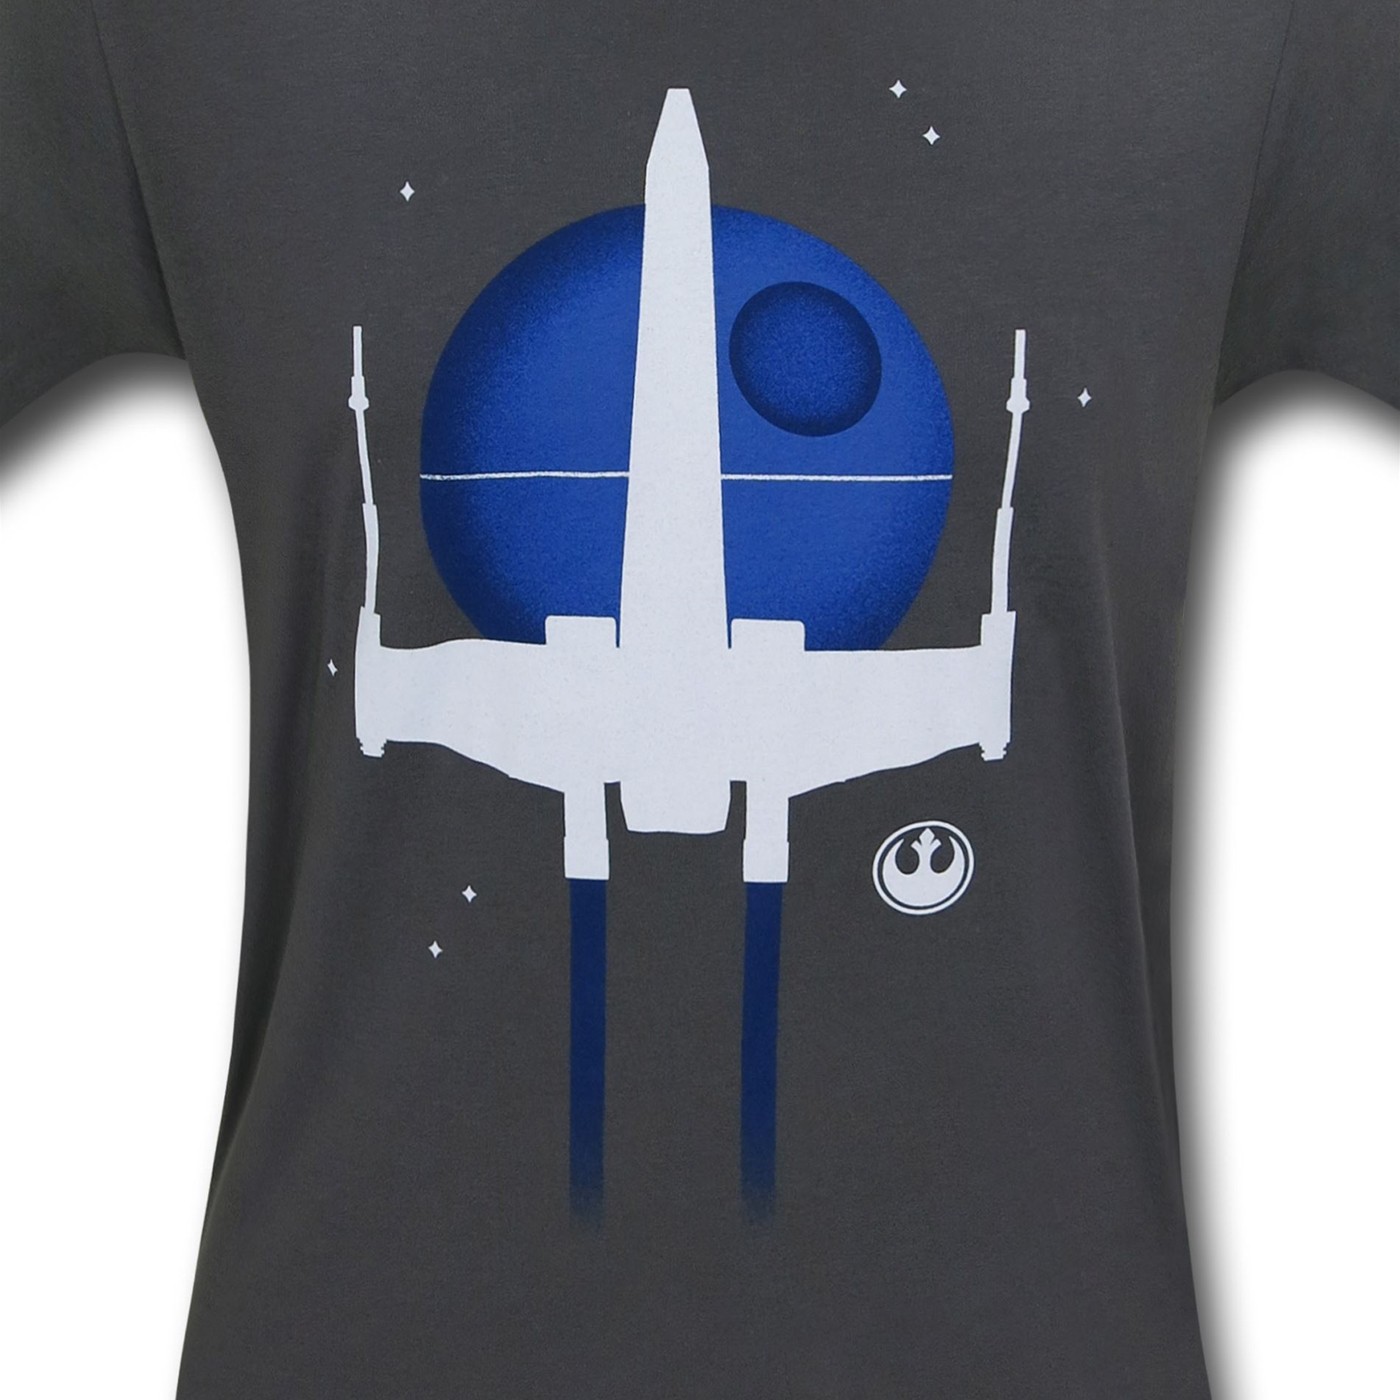 Star Wars Minimal X-Wing T-Shirt